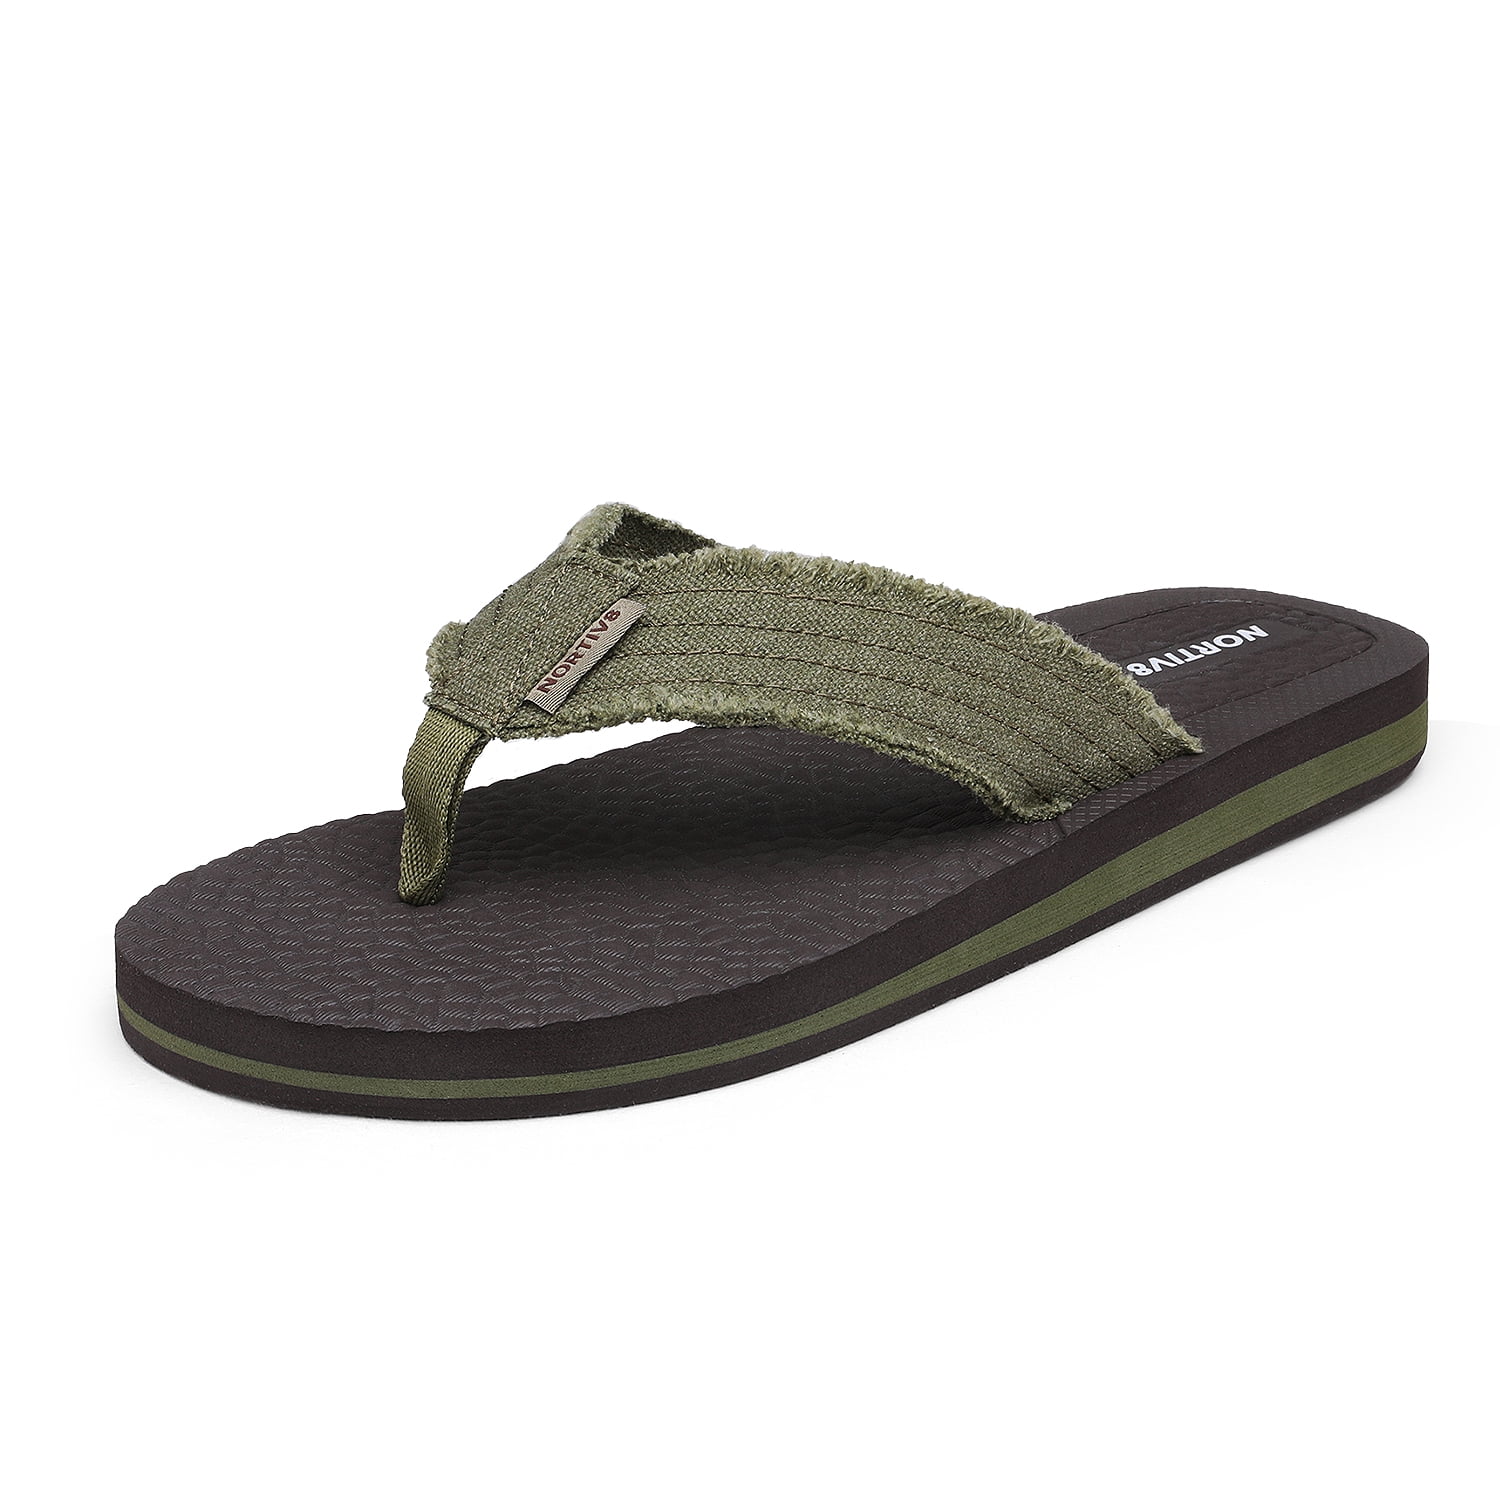 Nortiv8 Men's Flip Flops Beach Sandals Lightweight EVA Sole Comfort ...